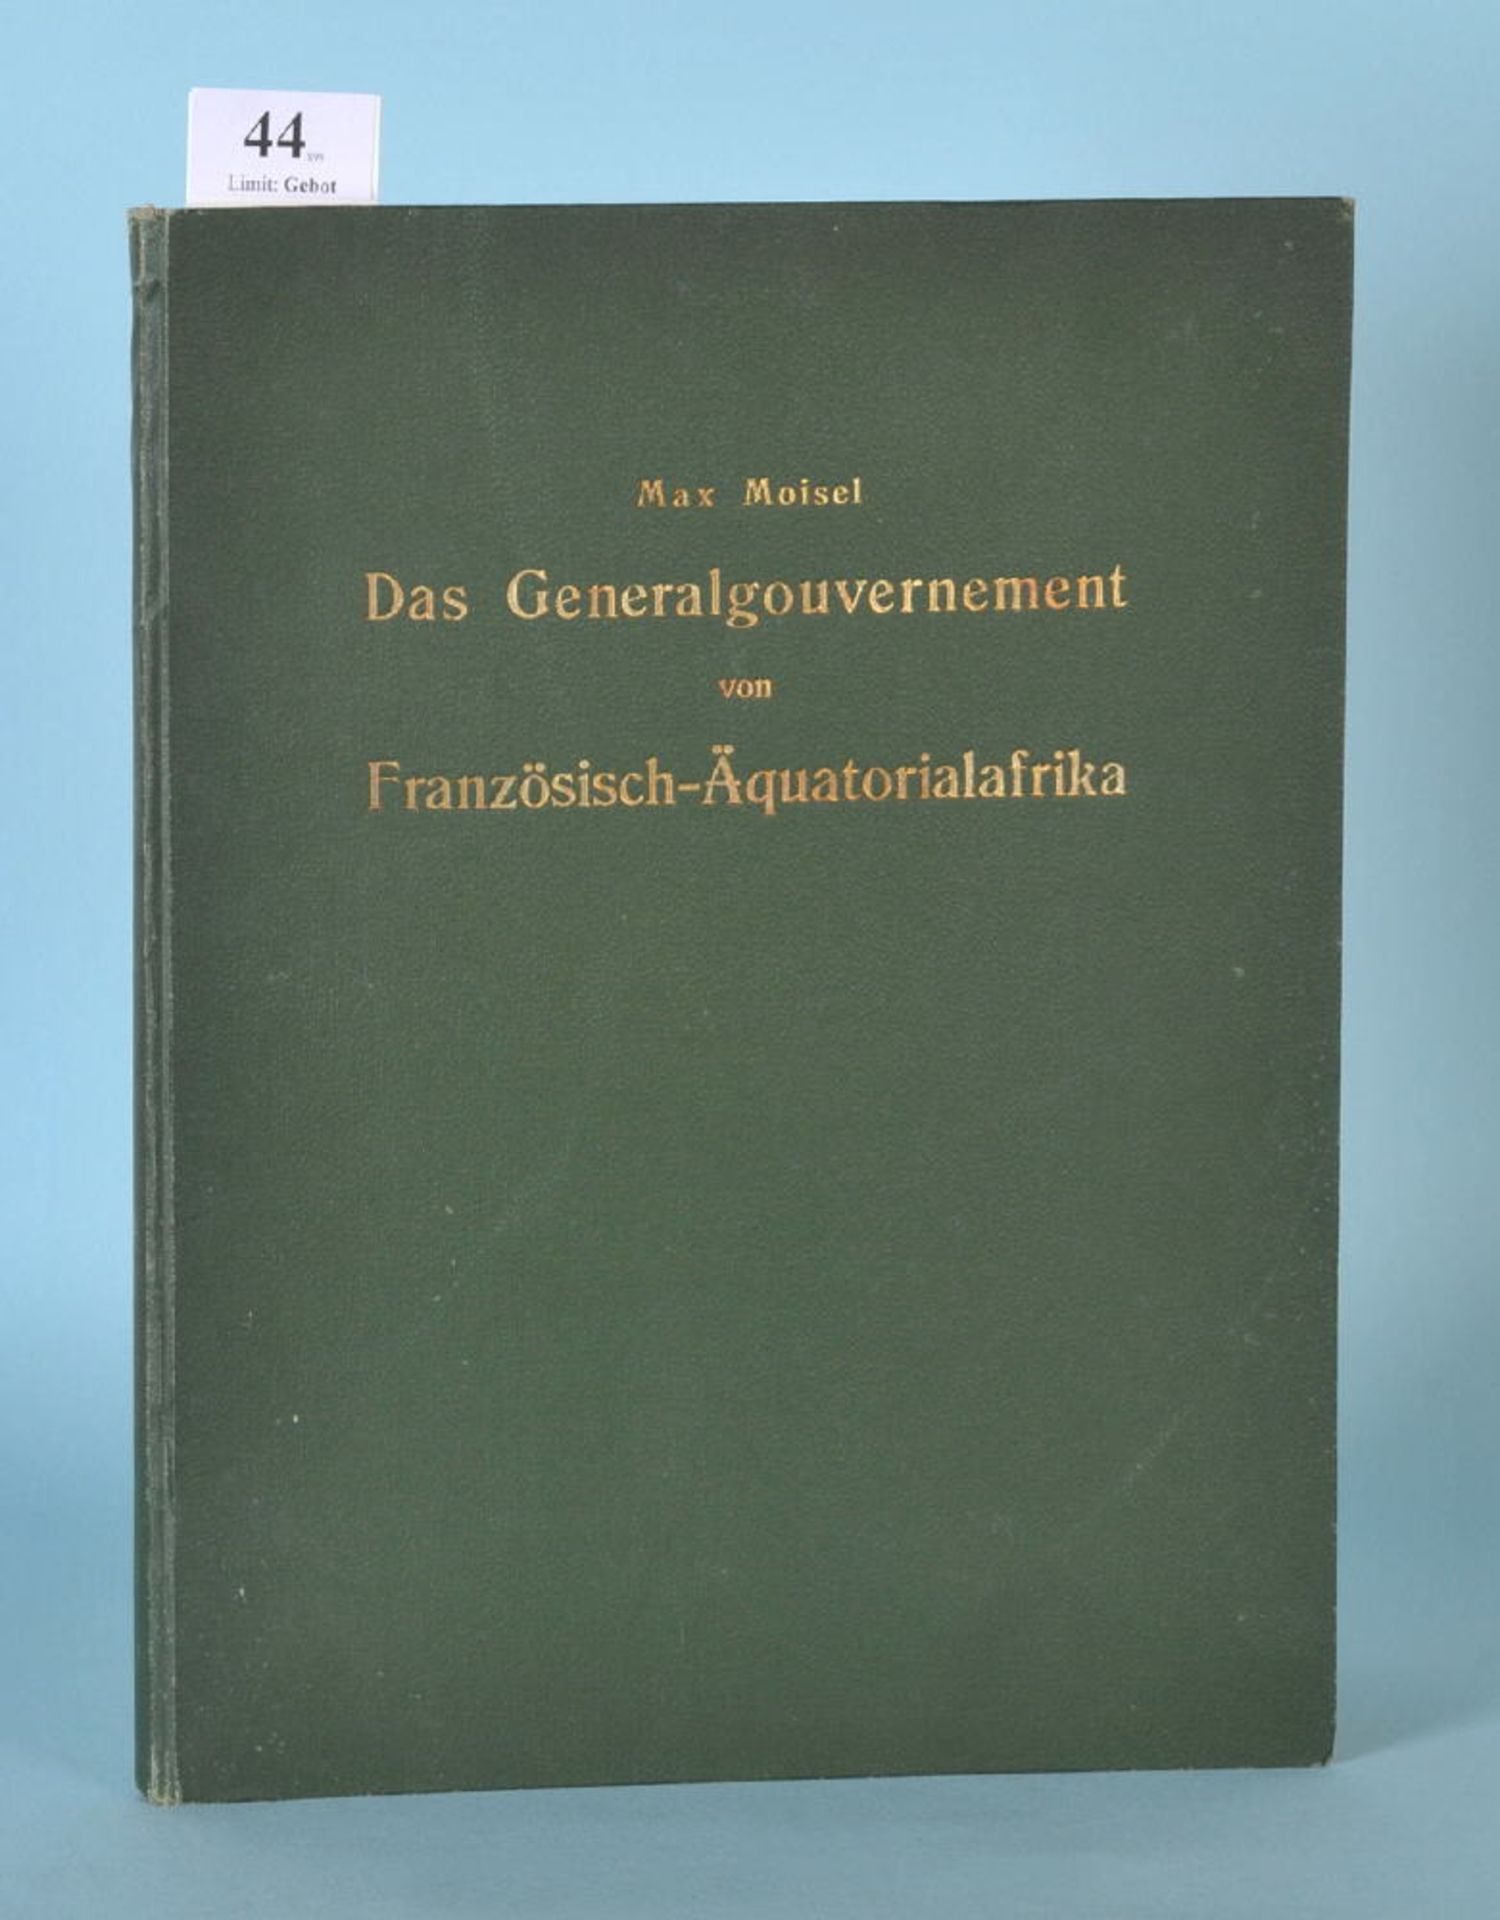 Moisel, Max "Das Generalgouvernement von...""...Französisch-Äquatorialafrika", 9 Falttafeln u. 1